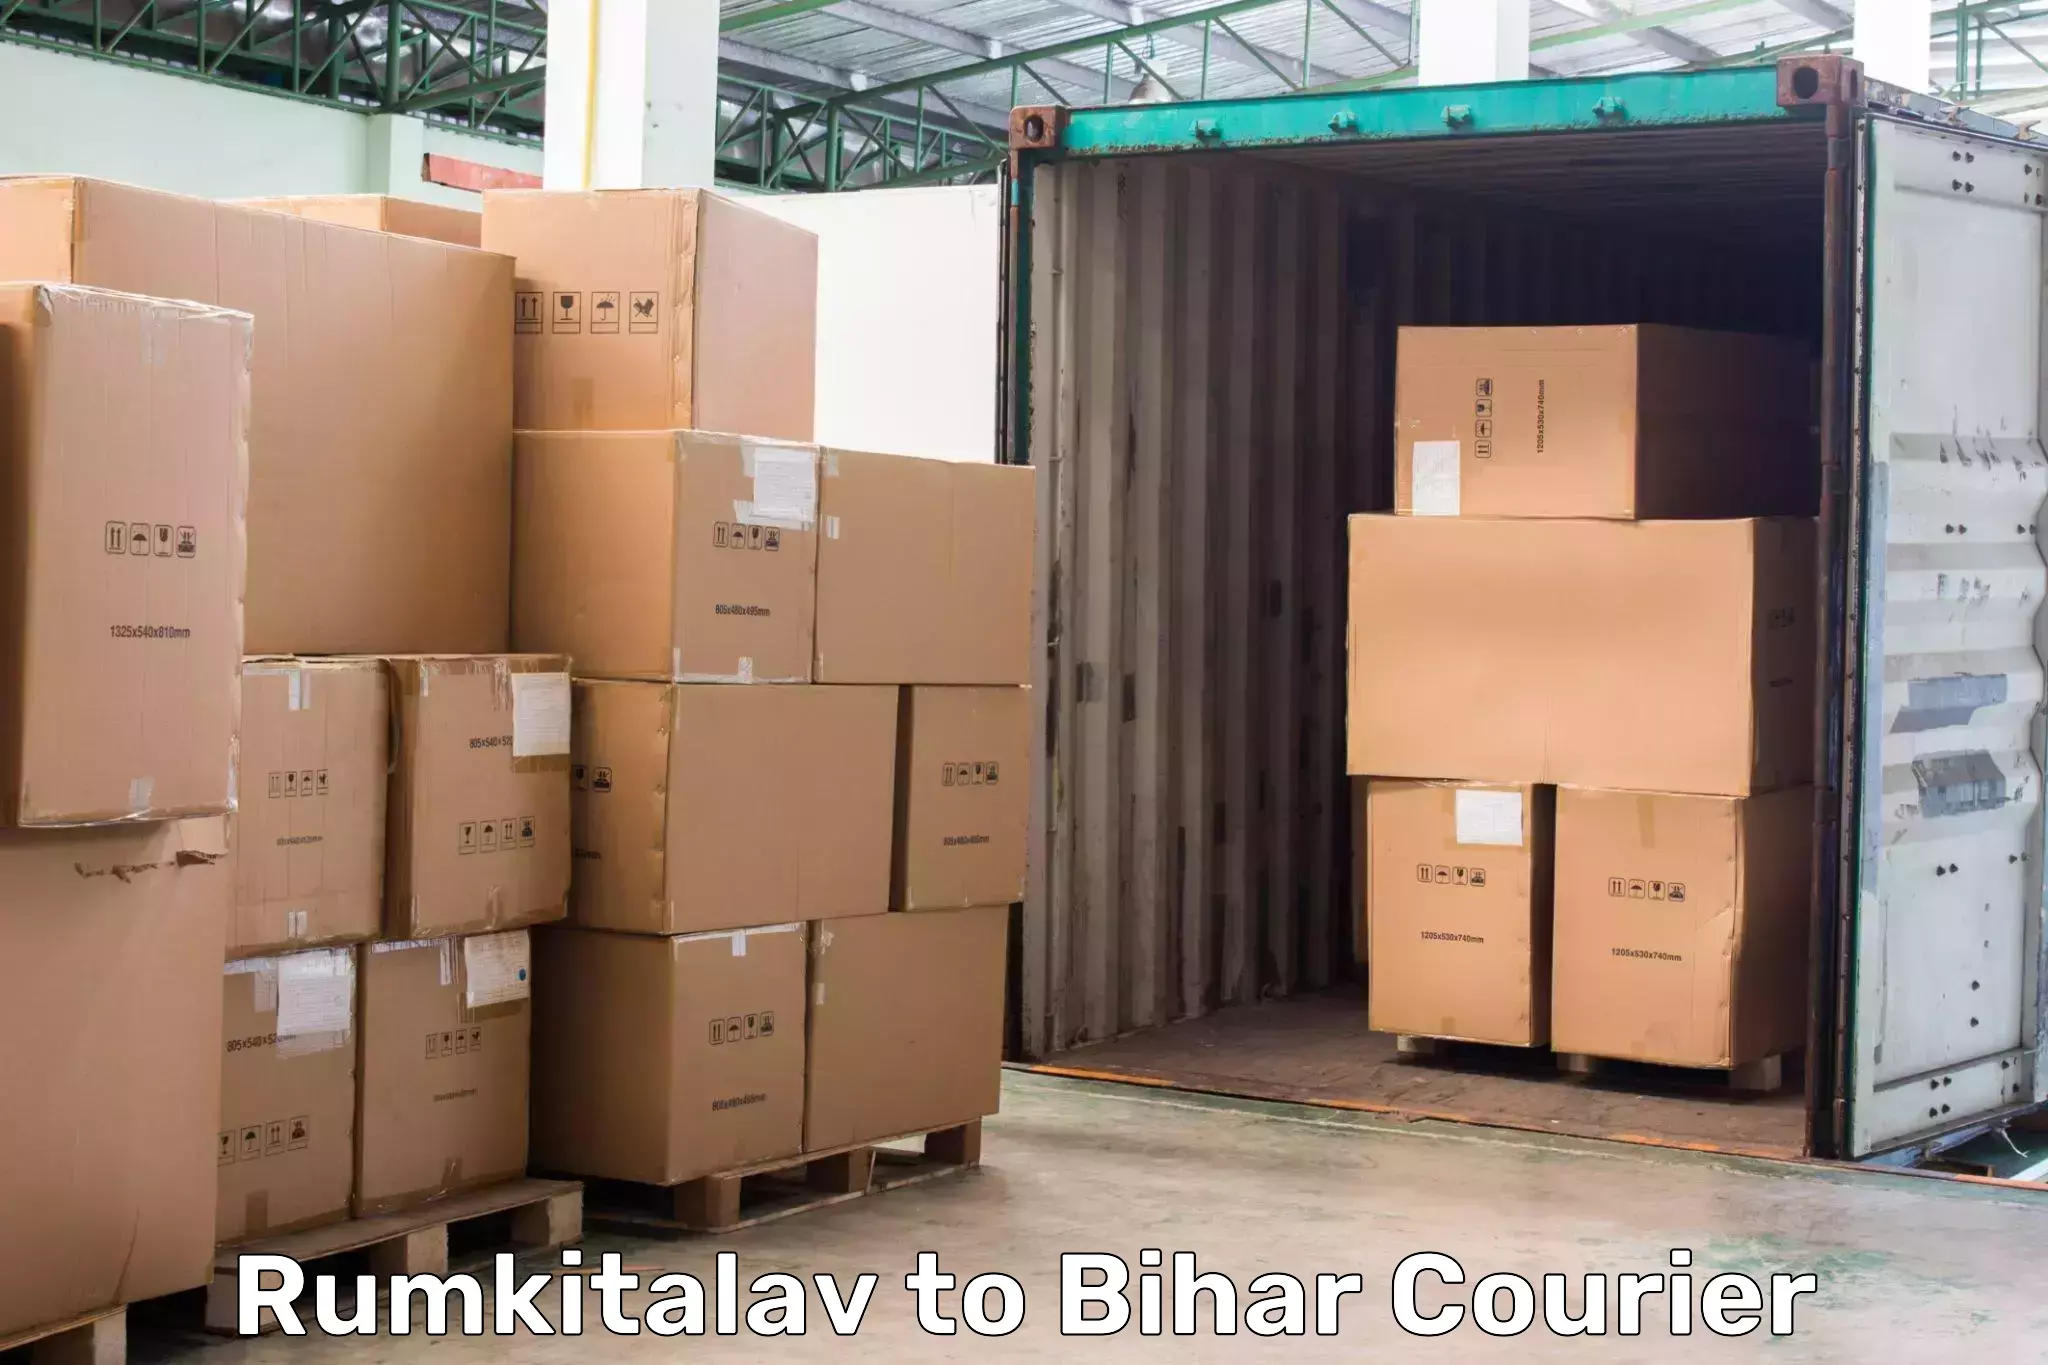 Door-to-door freight service Rumkitalav to Giddha